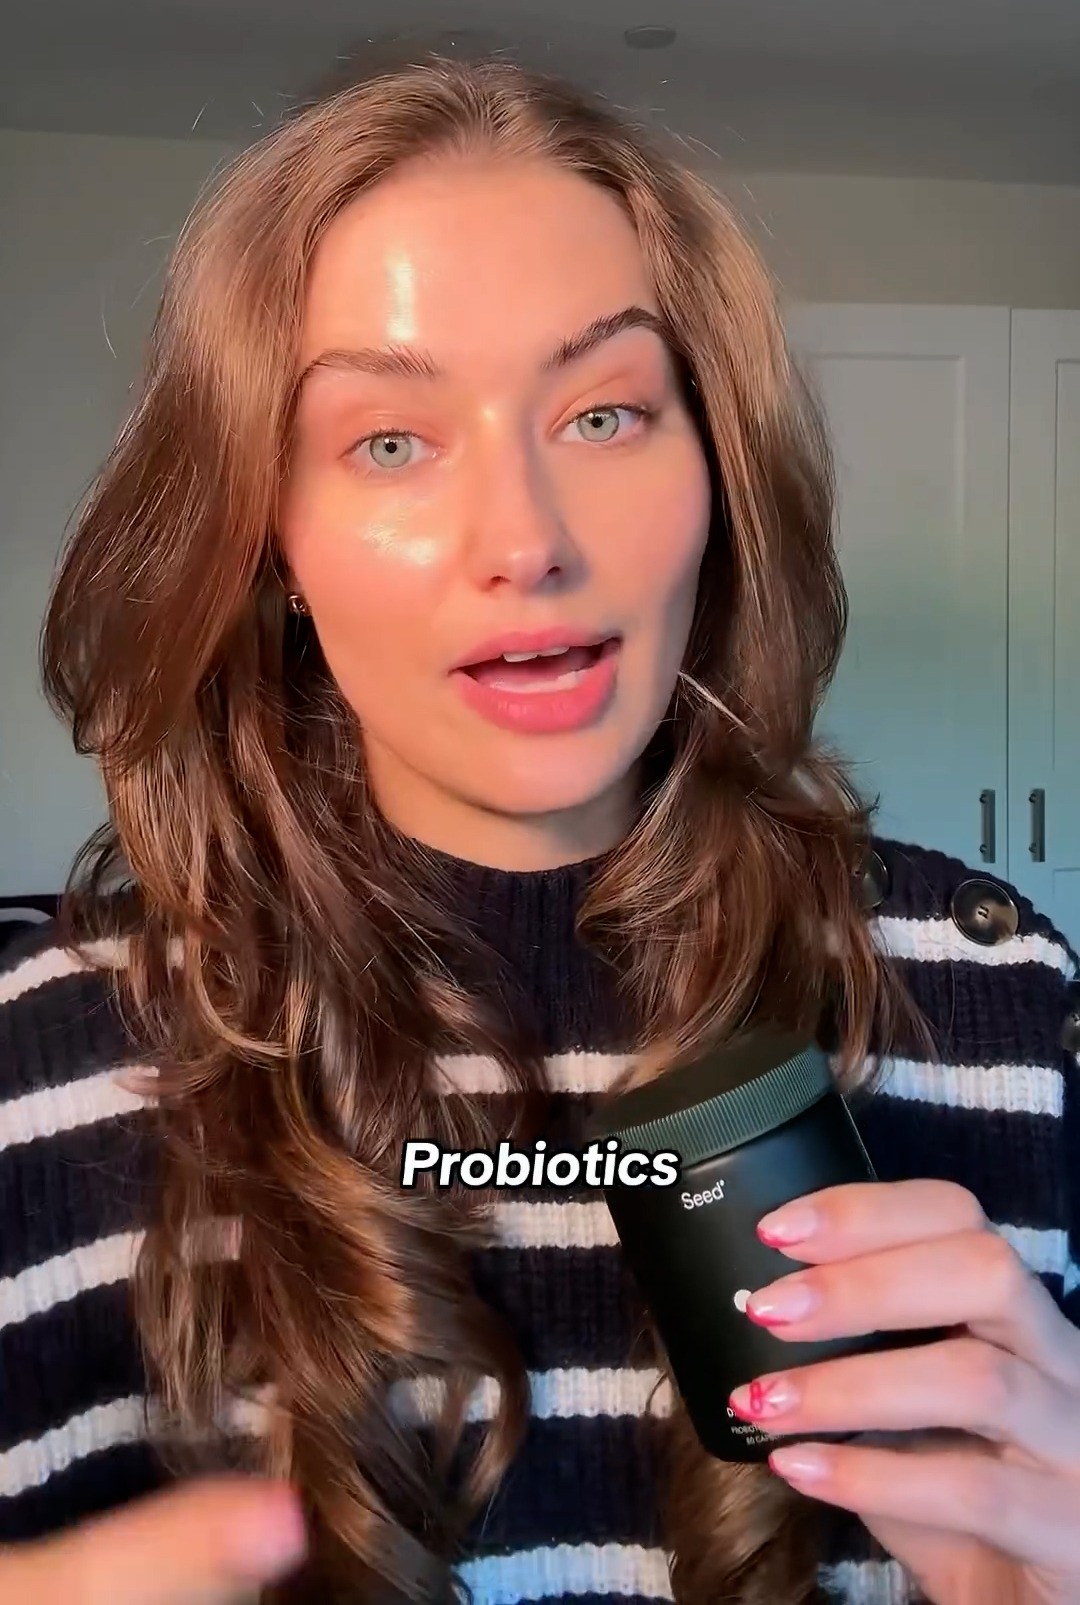 Sie empfahl Probiotika für die allgemeine Hautgesundheit